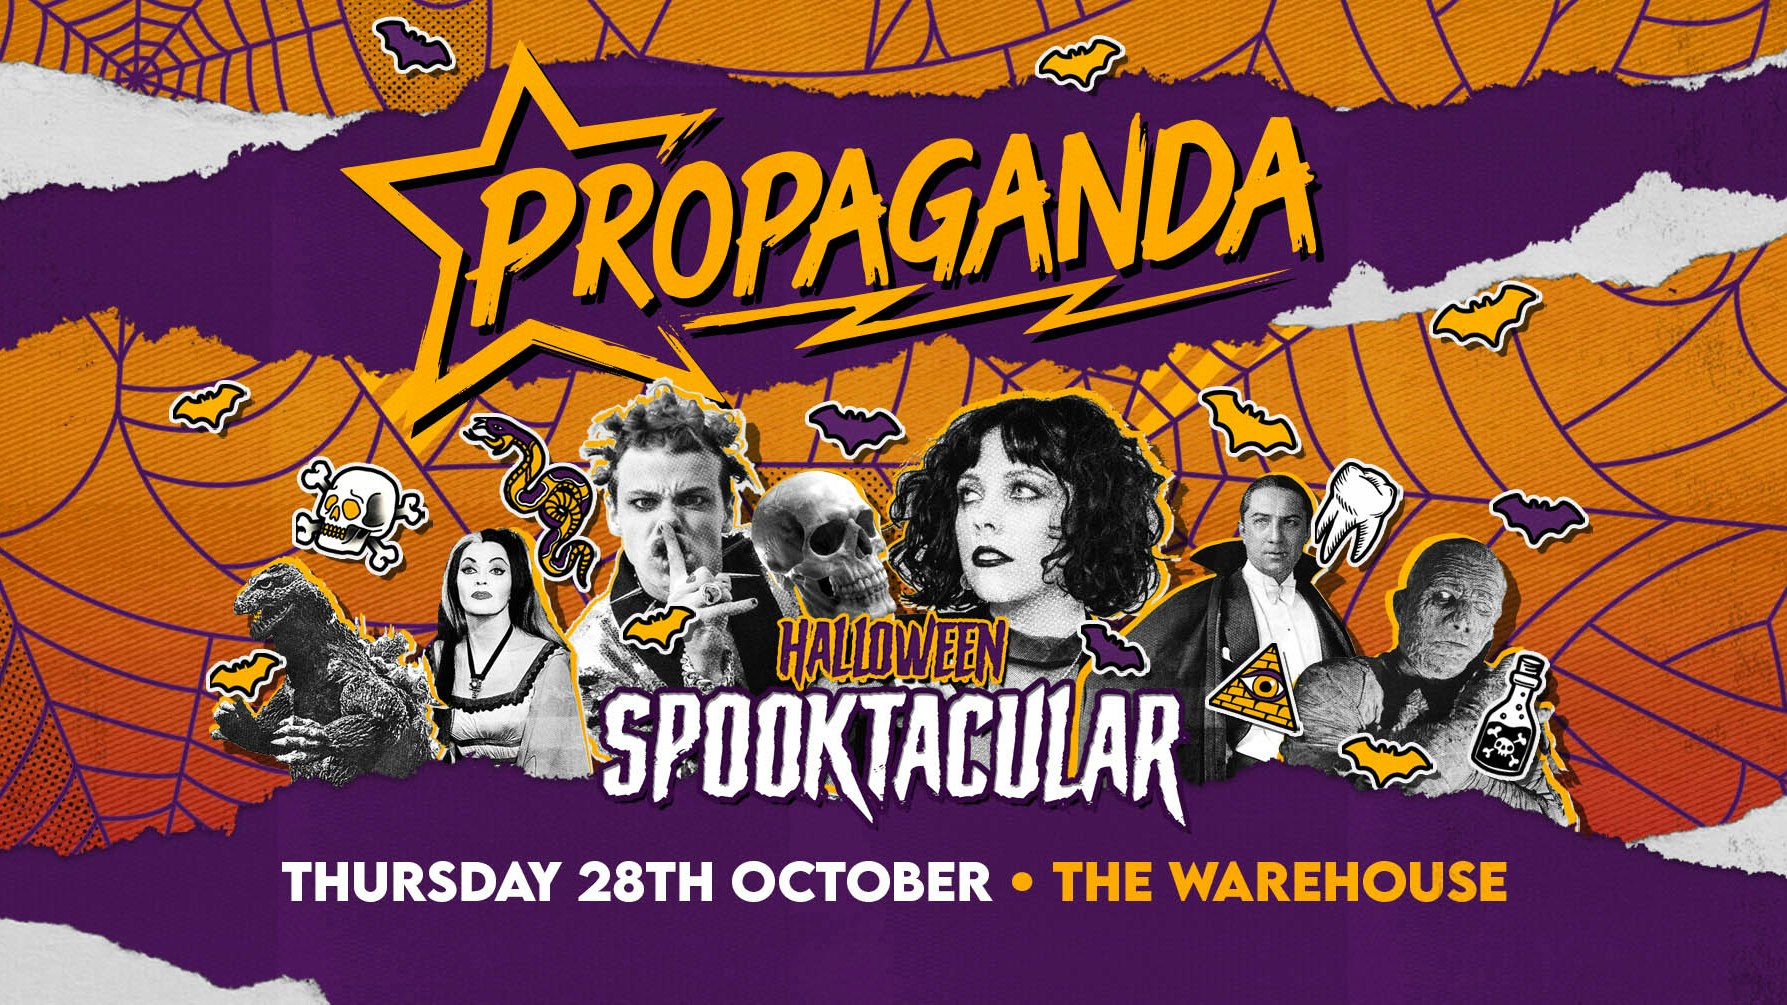 Propaganda Leeds – Halloween Spooktacular!